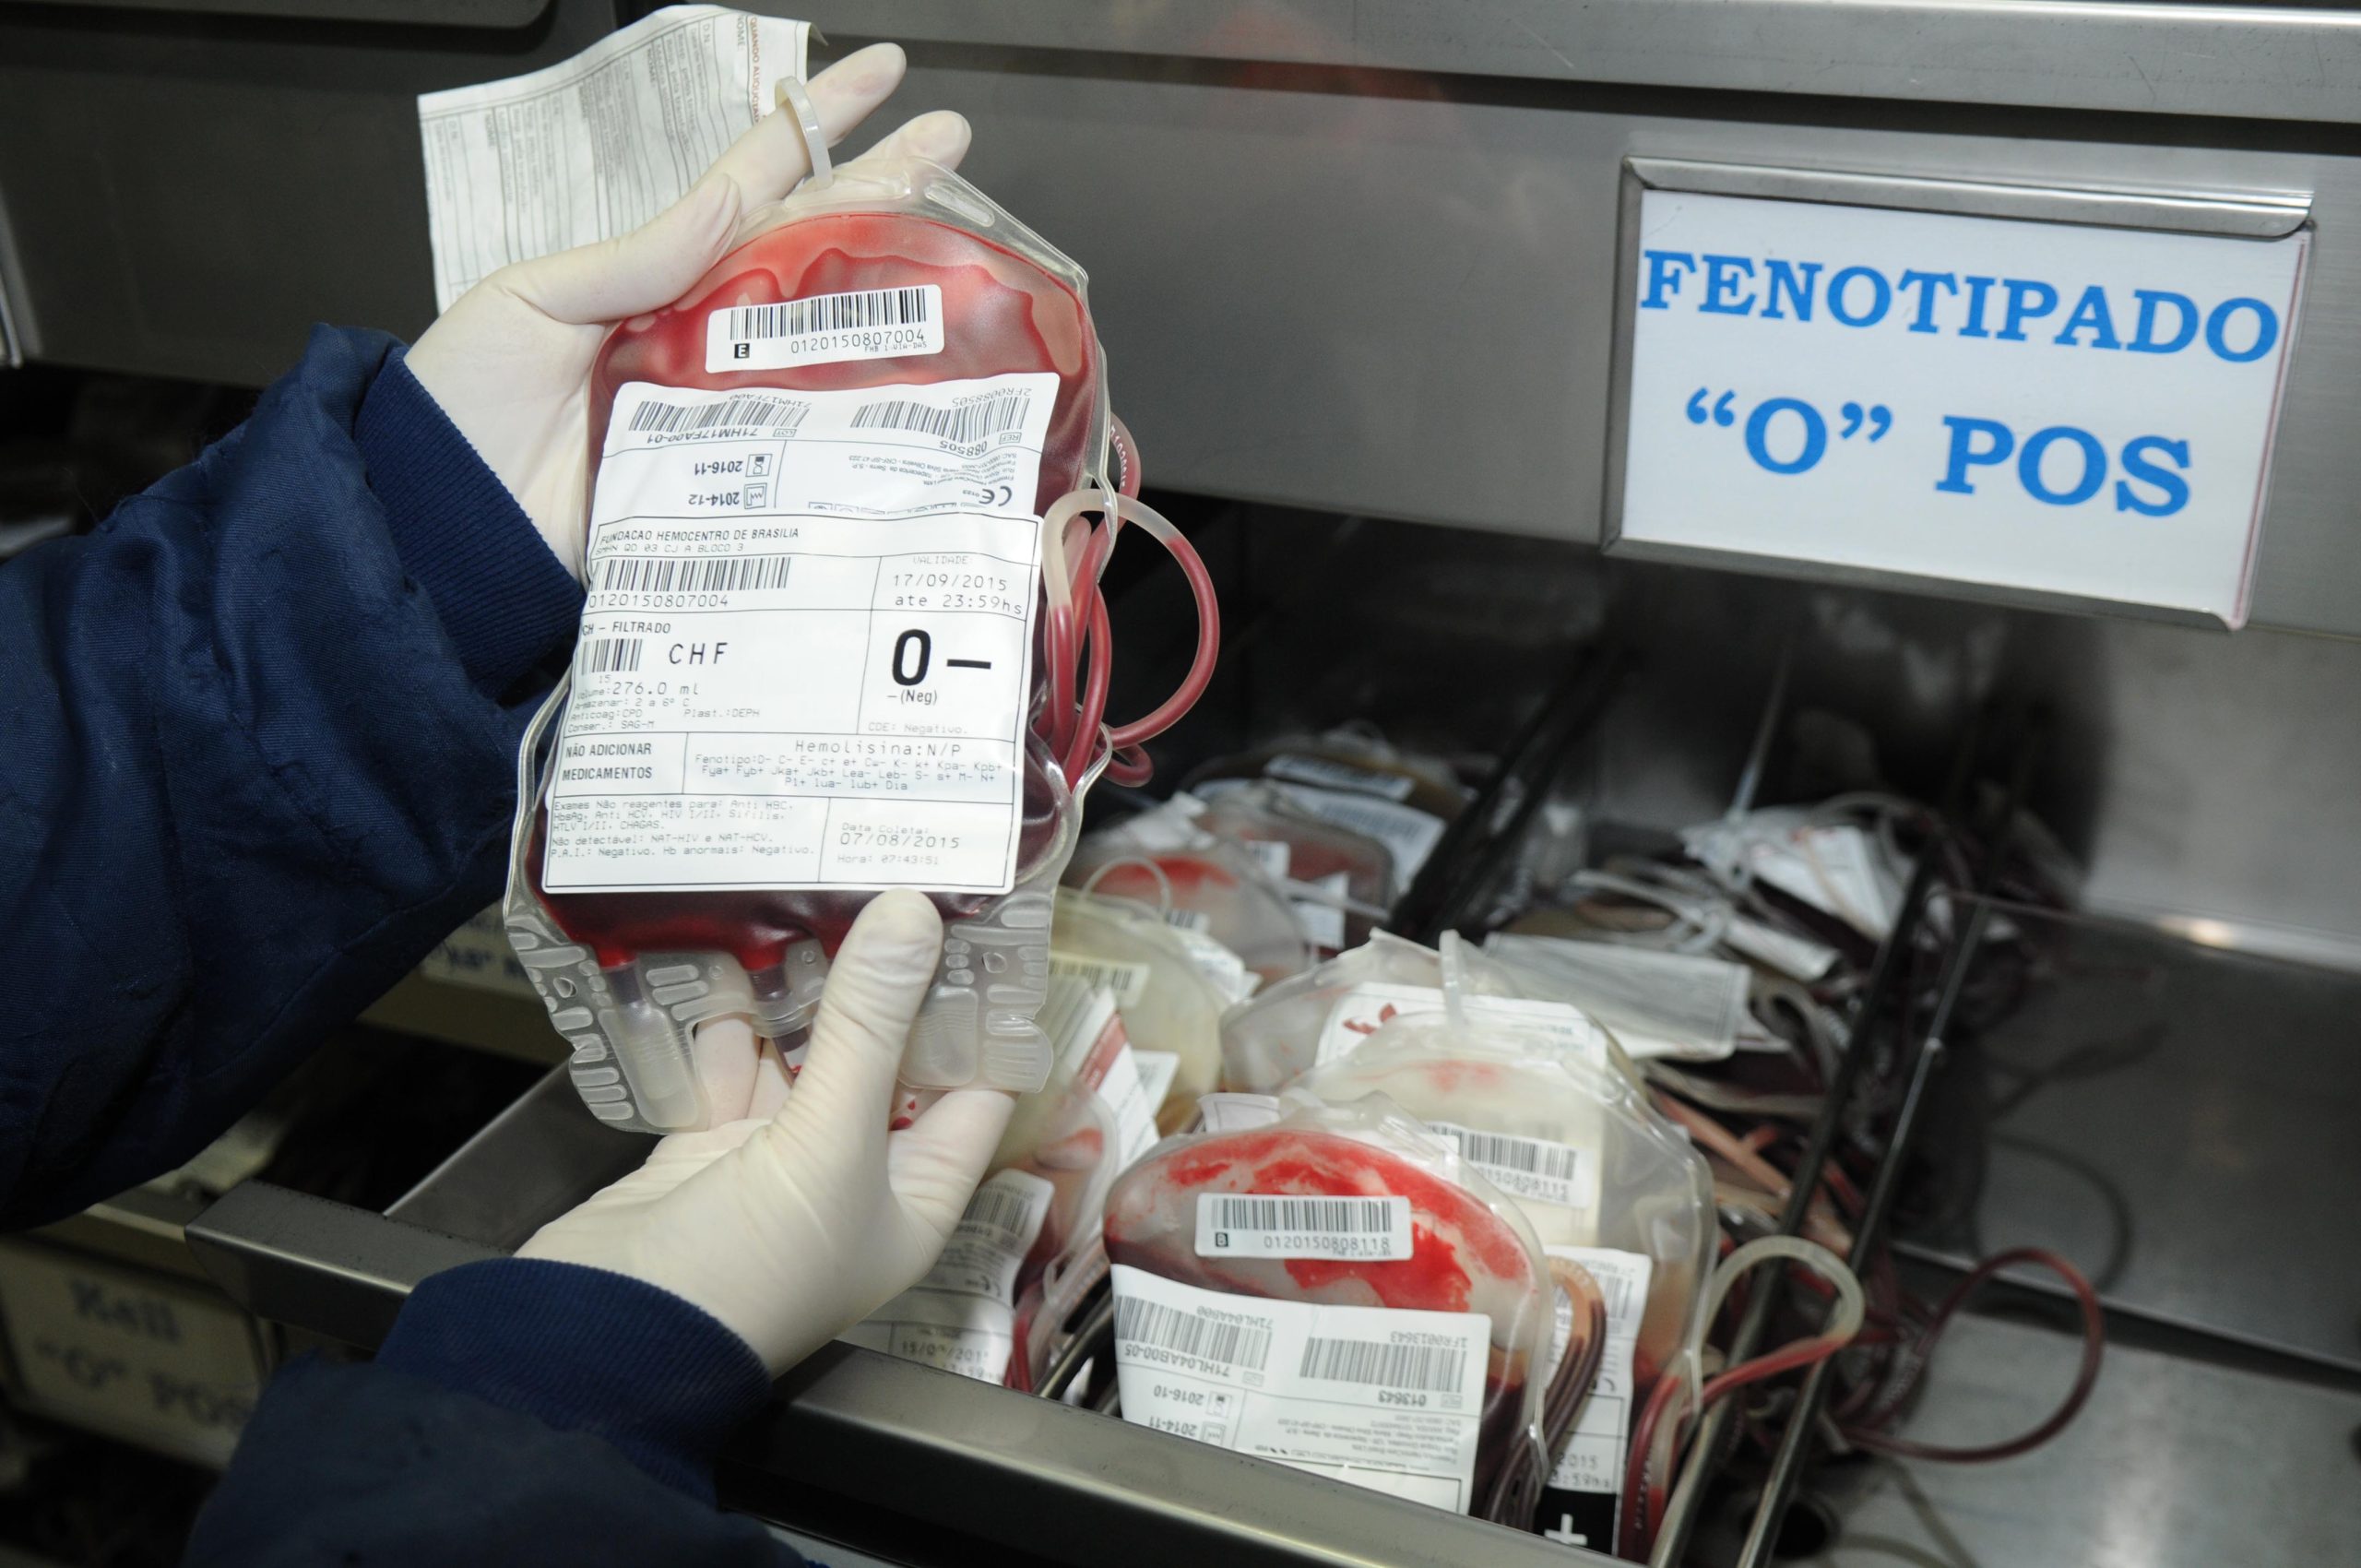 Evento estimula doação de sangue fenotipado para pacientes com doença falciforme